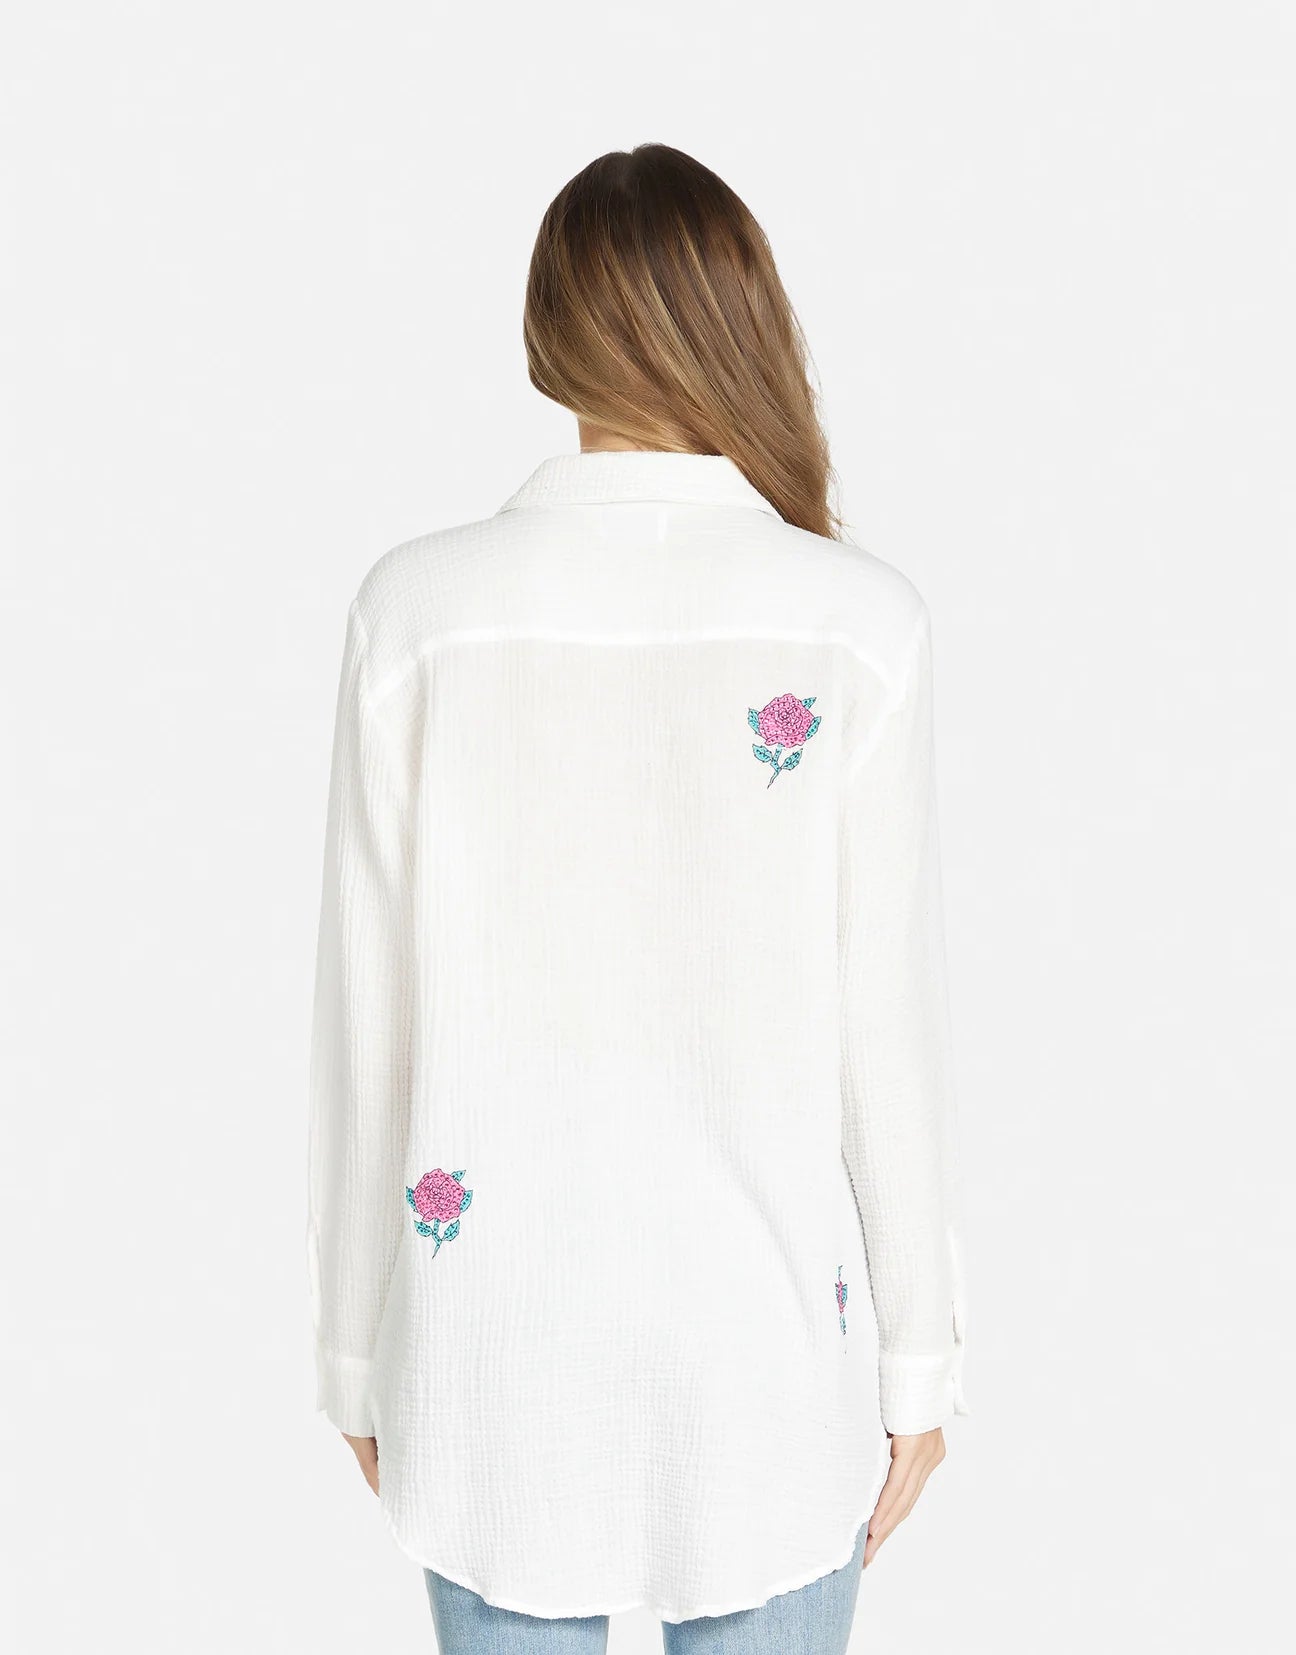 Shop Lauren Moshi Dara Crystal Roses Shirt - Premium Denim Shirt from Lauren Moshi Online now at Spoiled Brat 